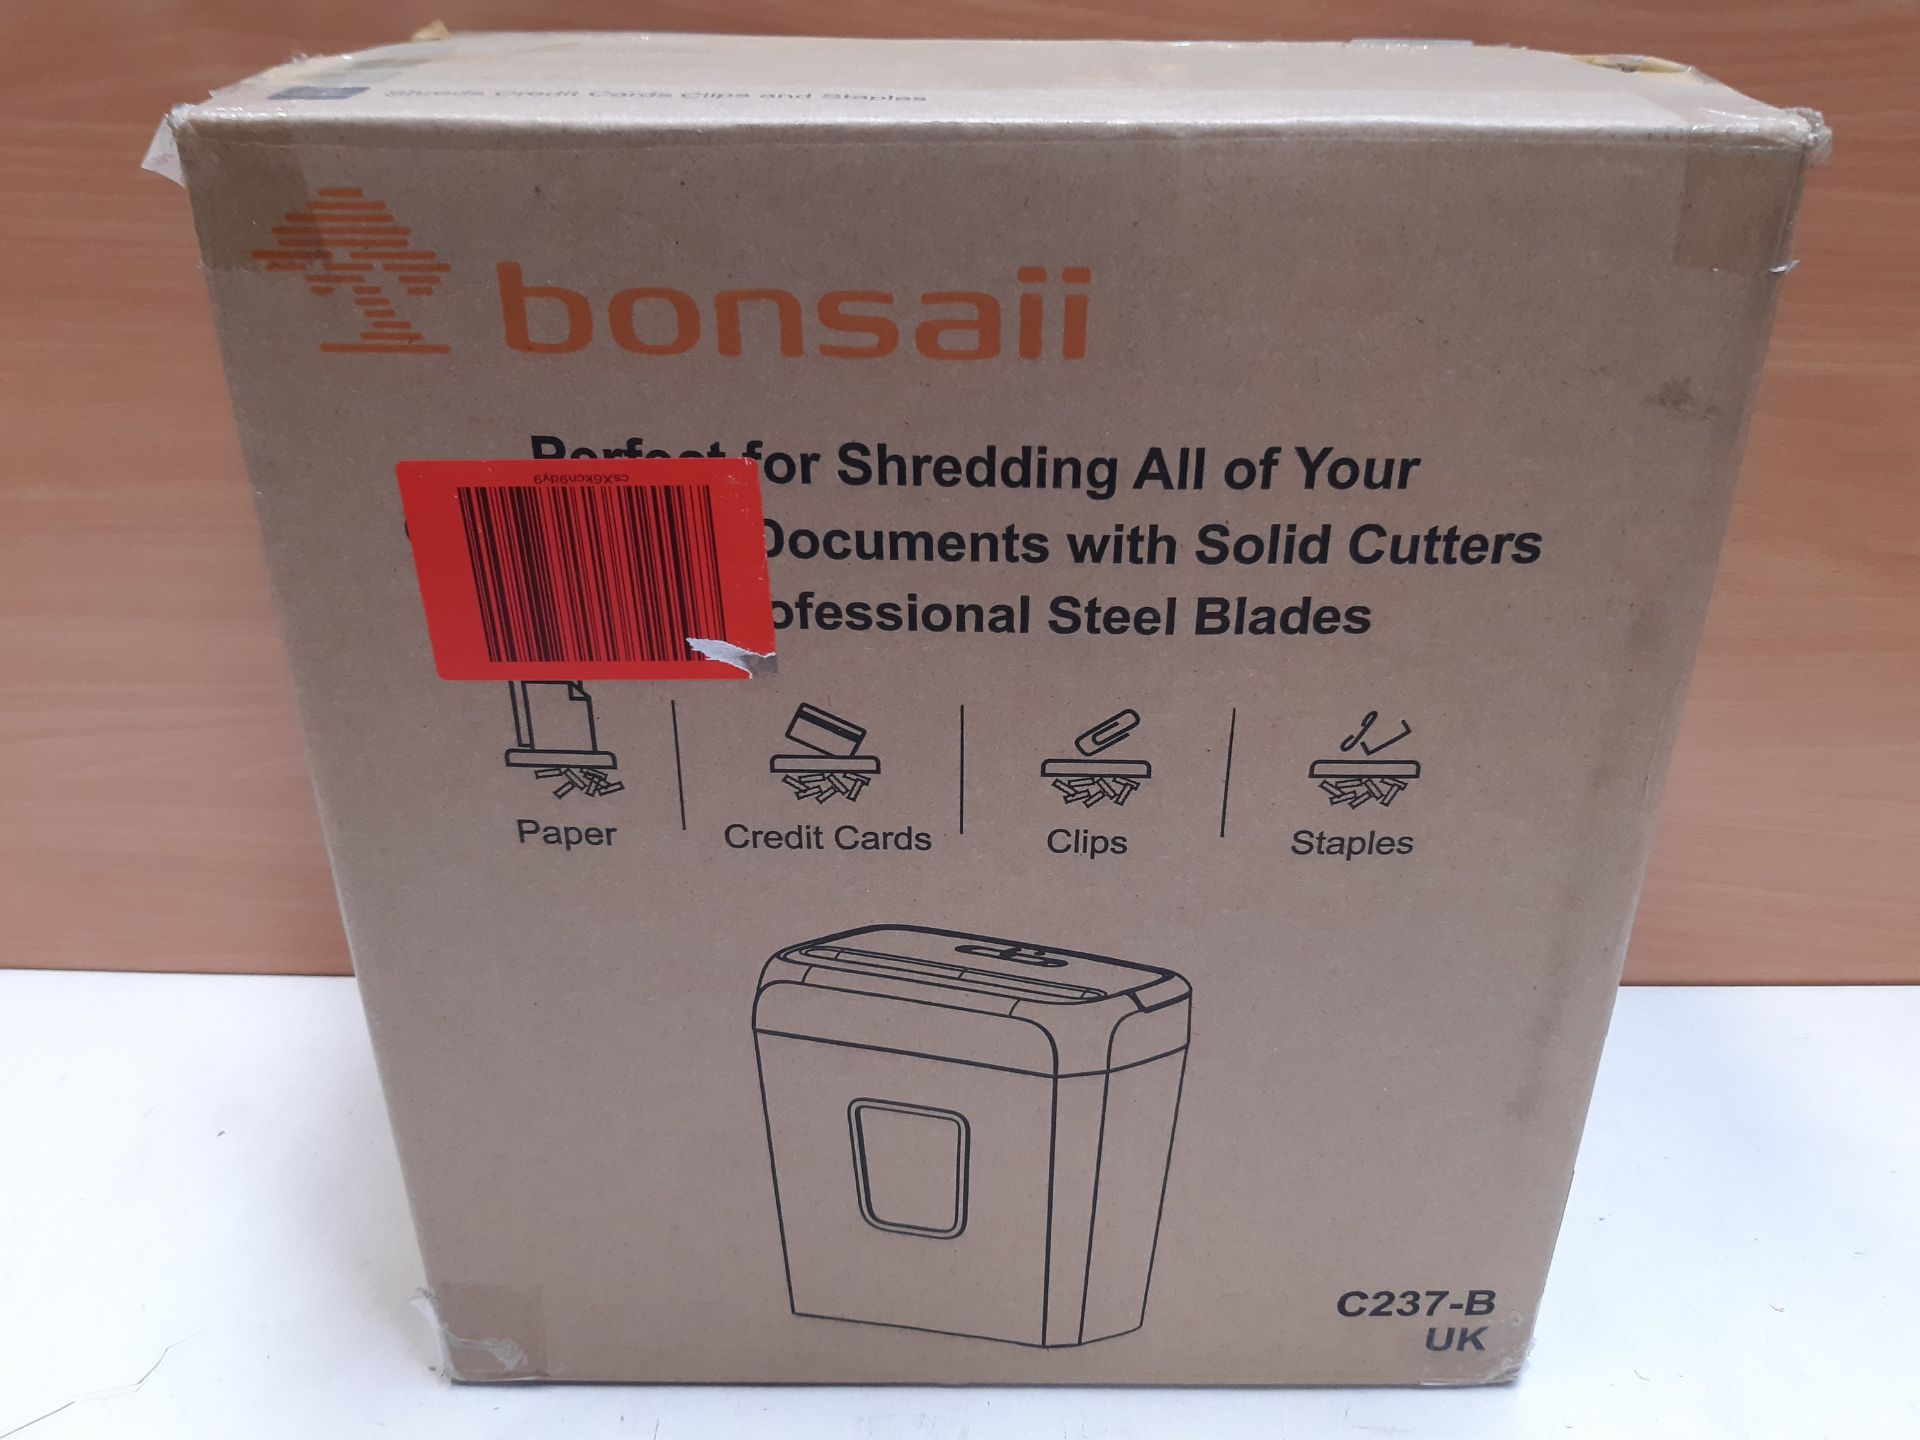 RRP £28.85 Paper Shredder for Home Use Bonsaii 6 Sheet Cross - Image 2 of 2